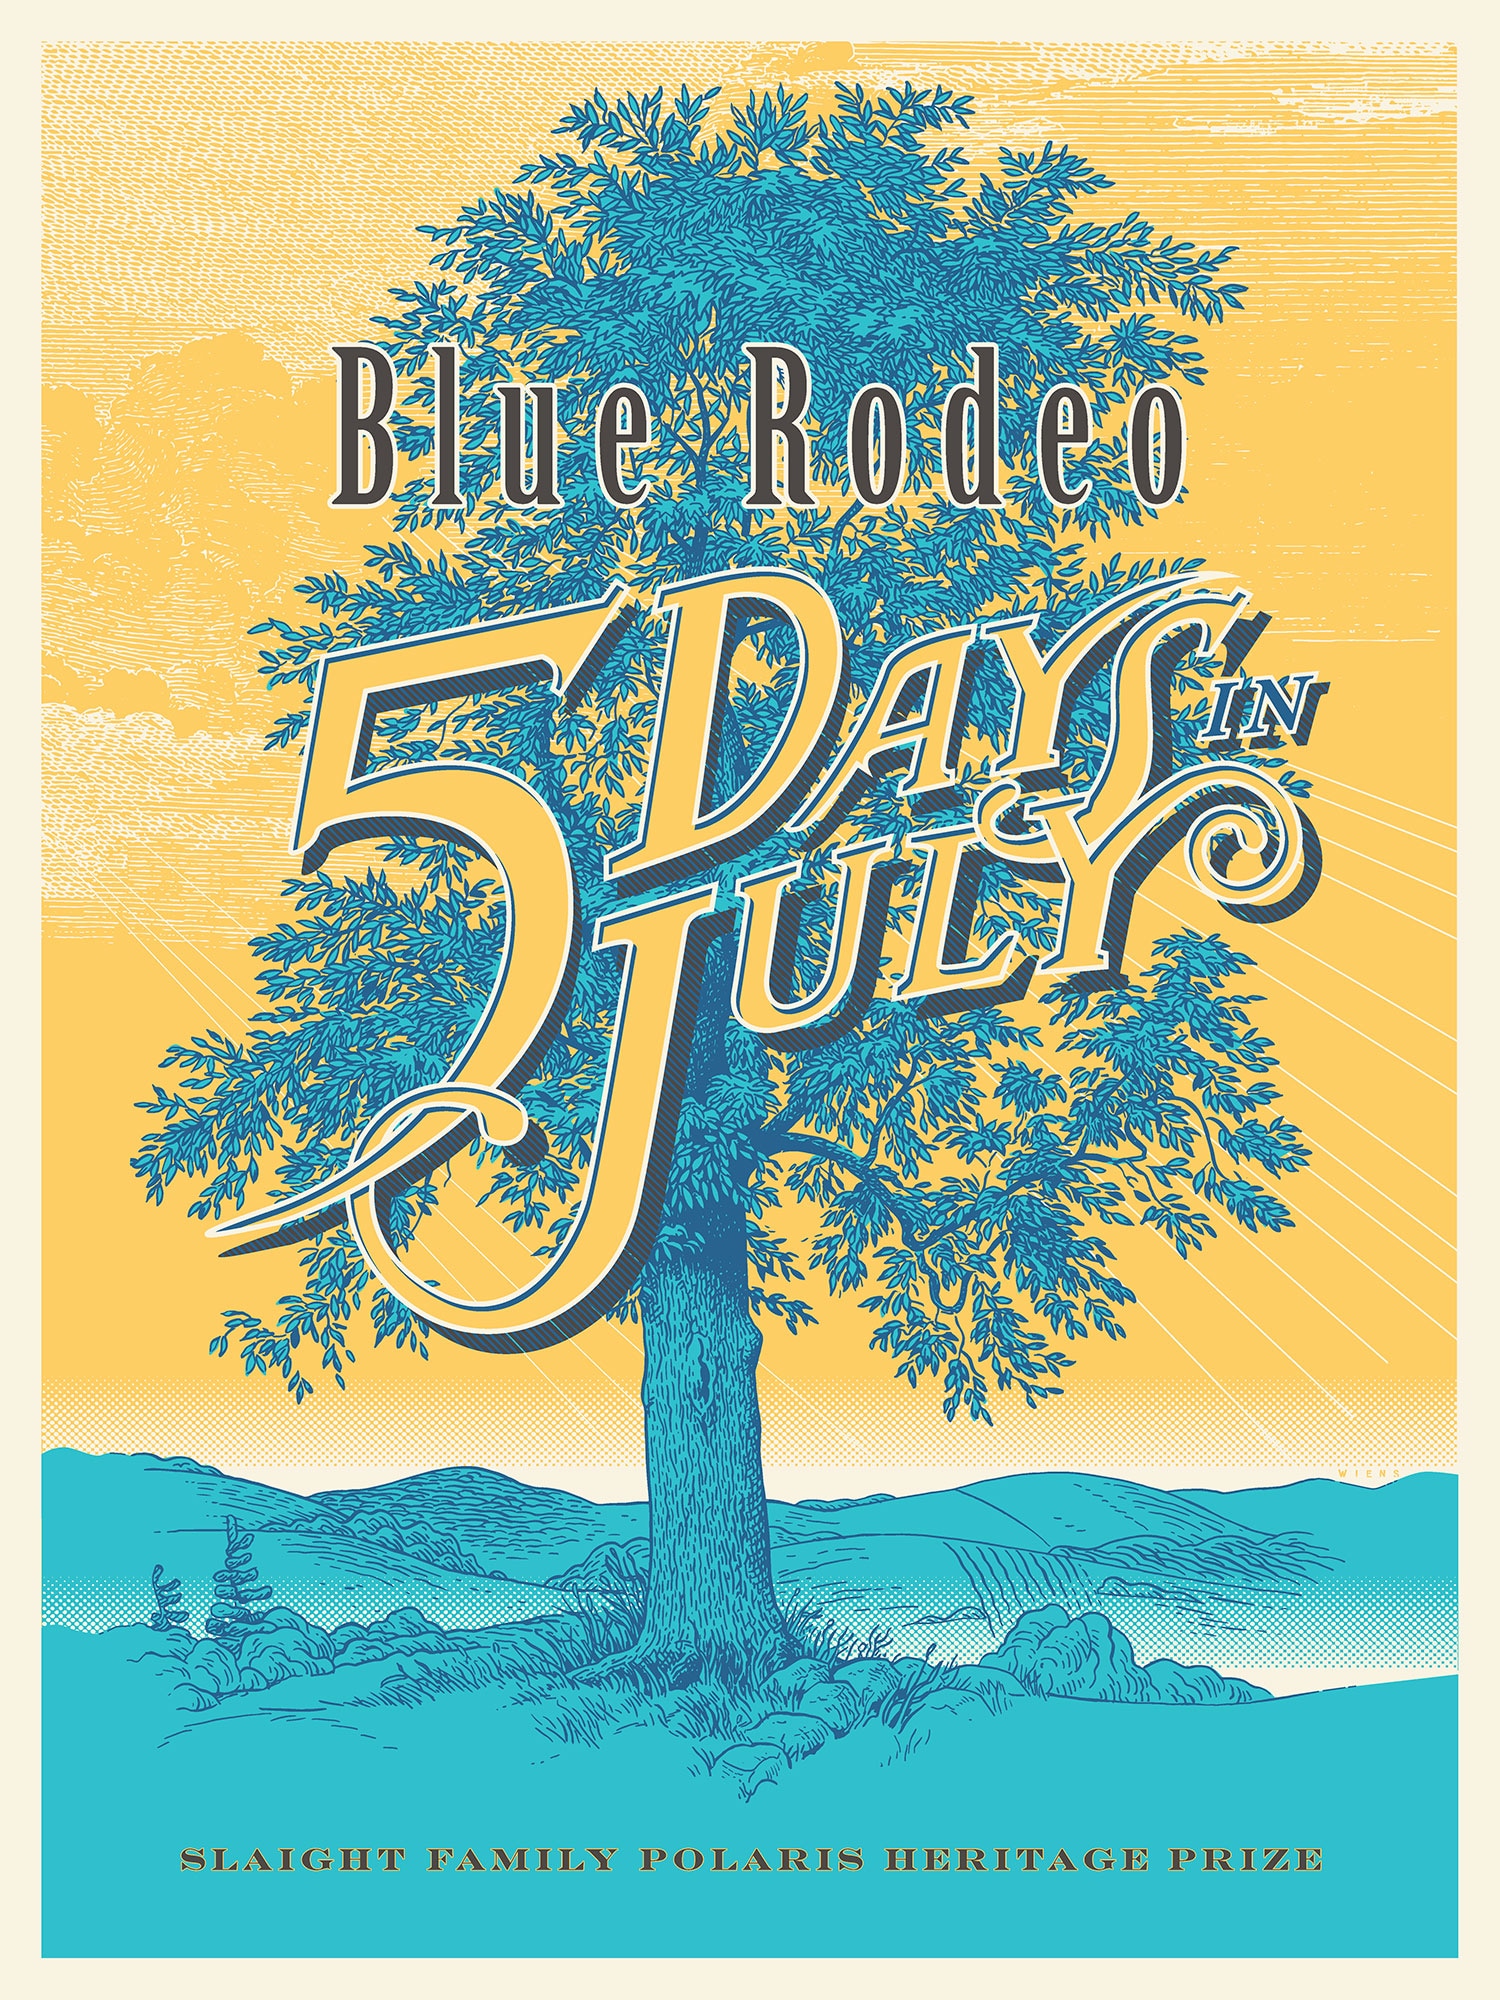  Affiche illustrée montrant un arbre bleu et feuillu au centre. Le ciel est d'un jaune vif. Les mots « Blue Rodeo 5 Days in July » sont écrits au centre.